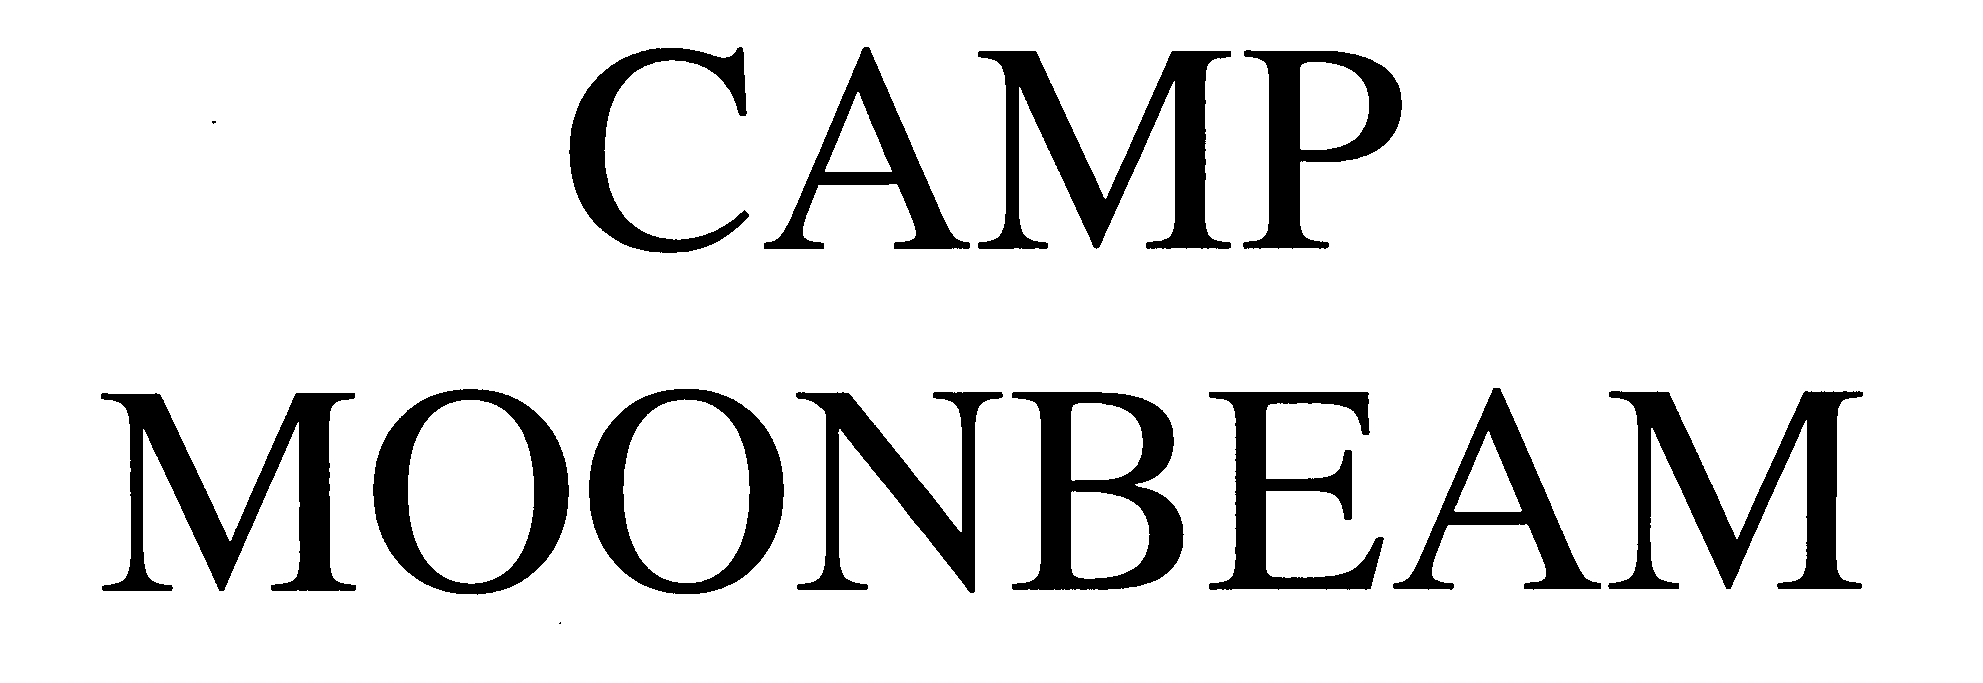  CAMP MOONBEAM